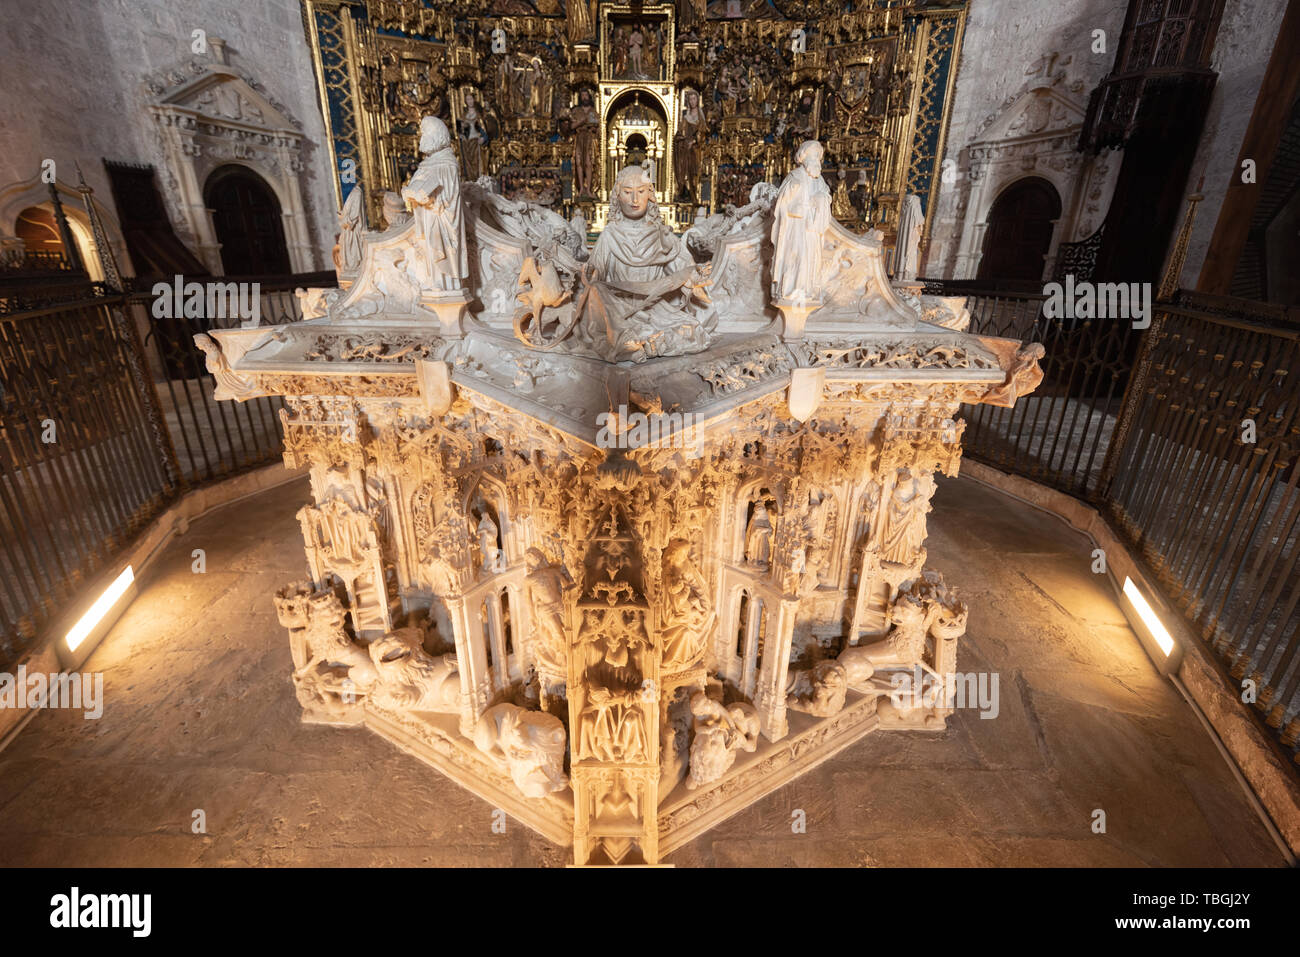 Burgos, Spain - April 13, 2019: Interior of Gothic monastery Cartuja de Miraflores in Burgos, Castilla y Leon, Spain. Stock Photo